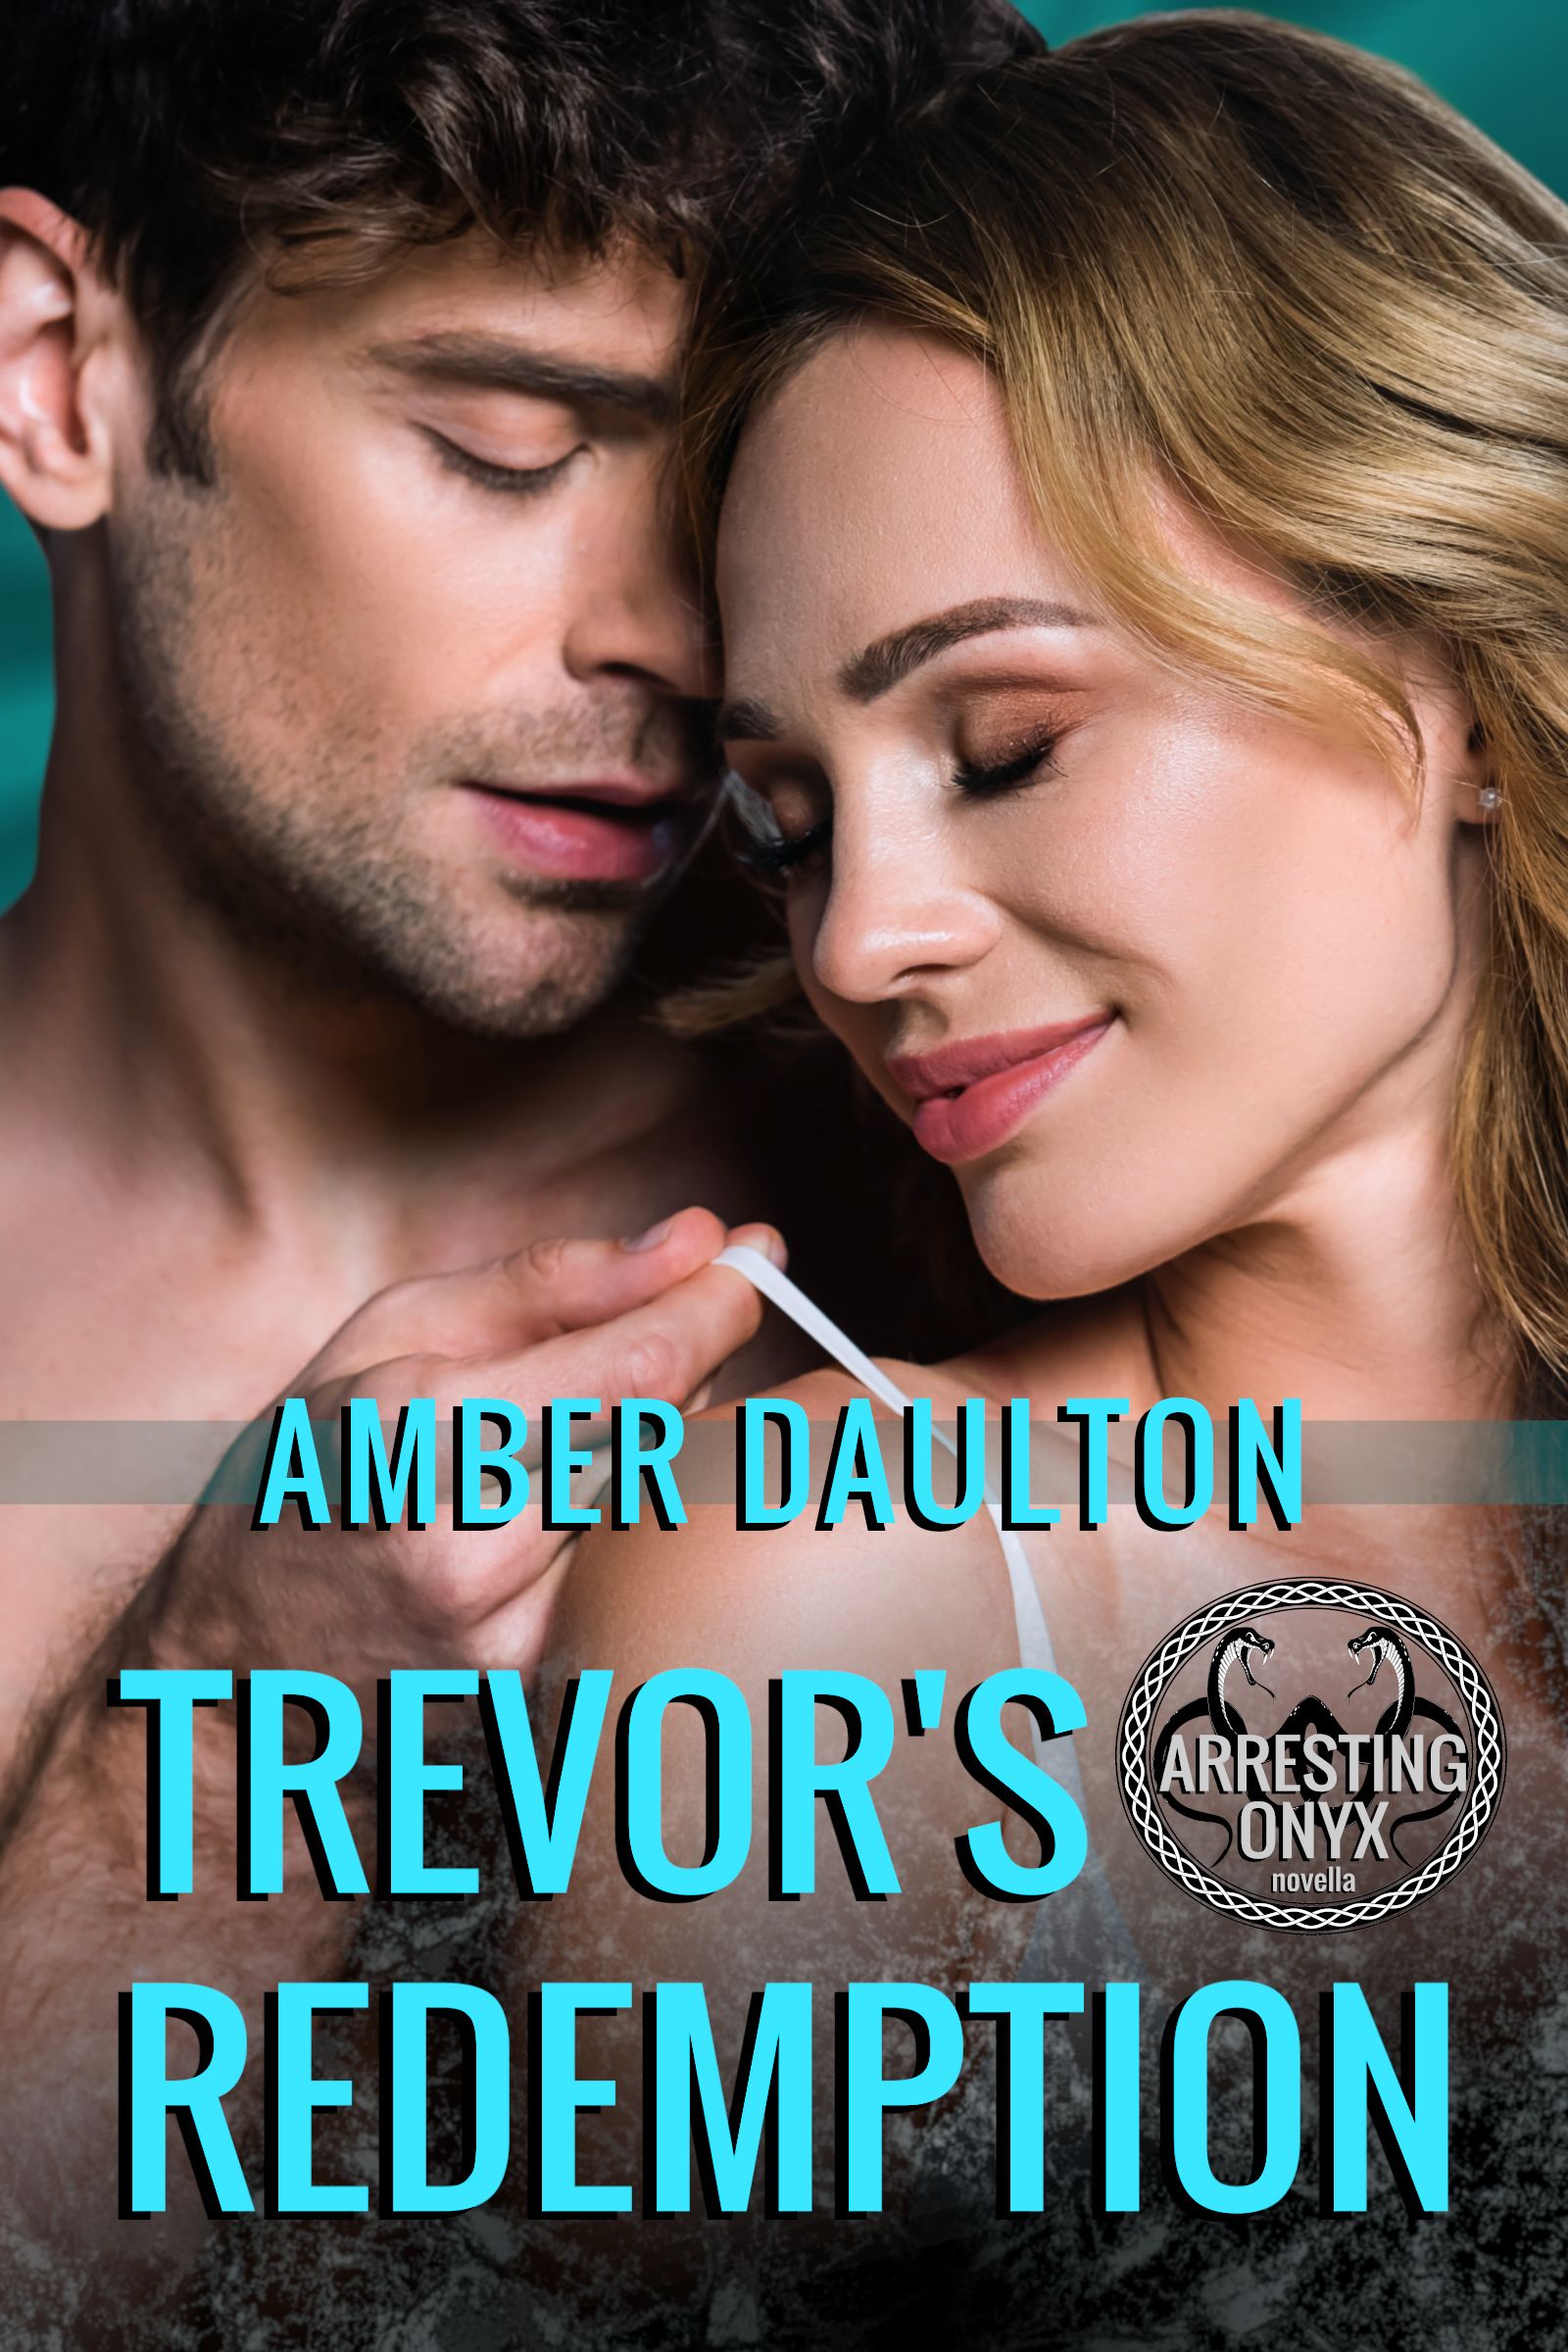 Trevor’s Redemption by Amber Daulton